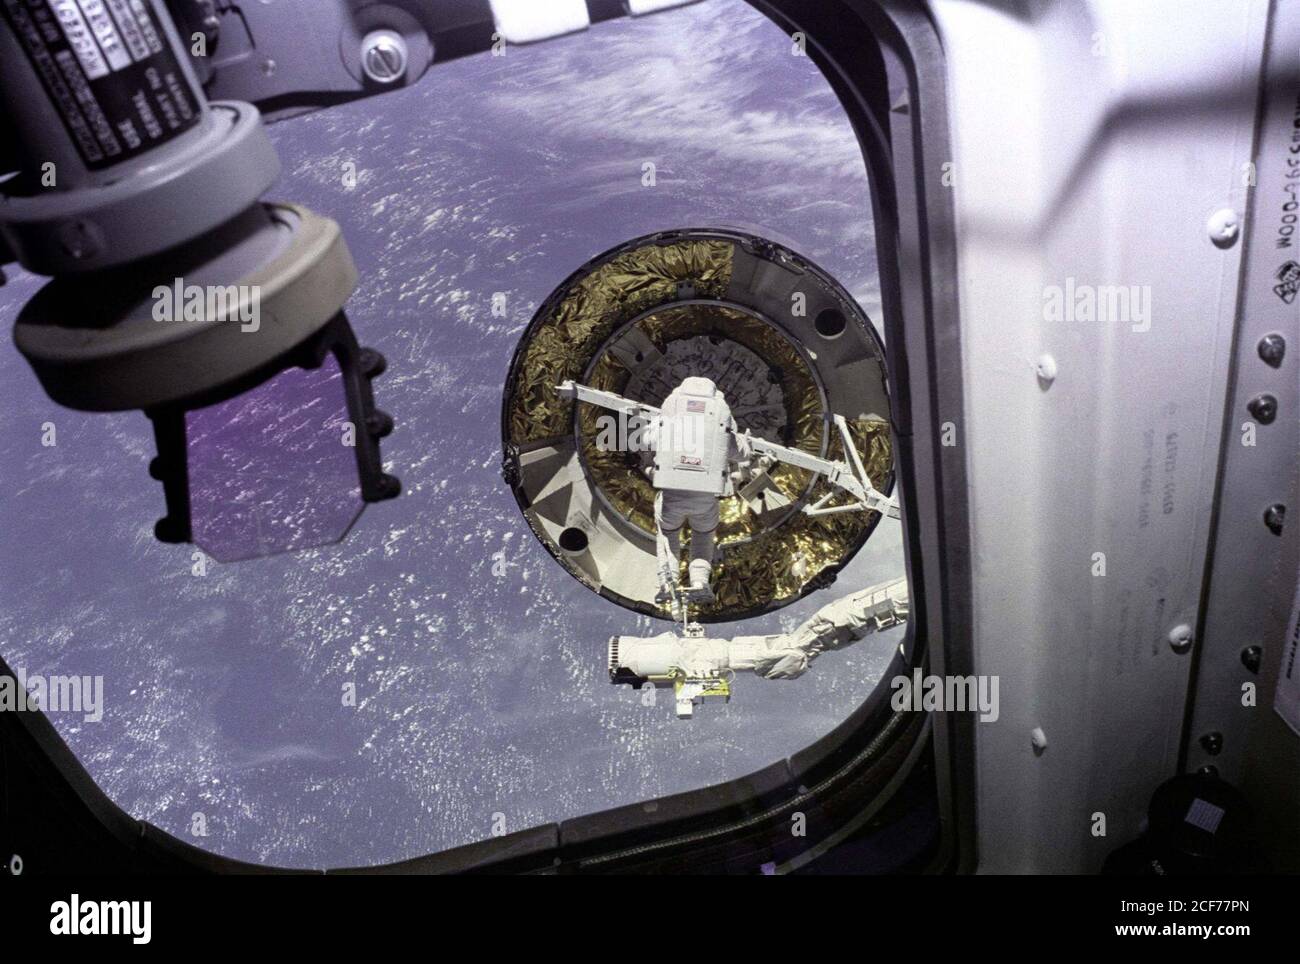 Der erste einzelne Besatzungsmitglied EVA-Capture-Versuch der Intelsat VI aus der Endeavour Achterdeck Fenster gesehen. EVA Mission Specialist Pierre Thuot steht auf der Endeffektor-Plattform des Remote-Manipulatorsystems (RMS), wobei die Satellitenerfassungsleiste versucht, sie an den frei schwebenden Kommunikationssatelliten anzuschließen. Stockfoto